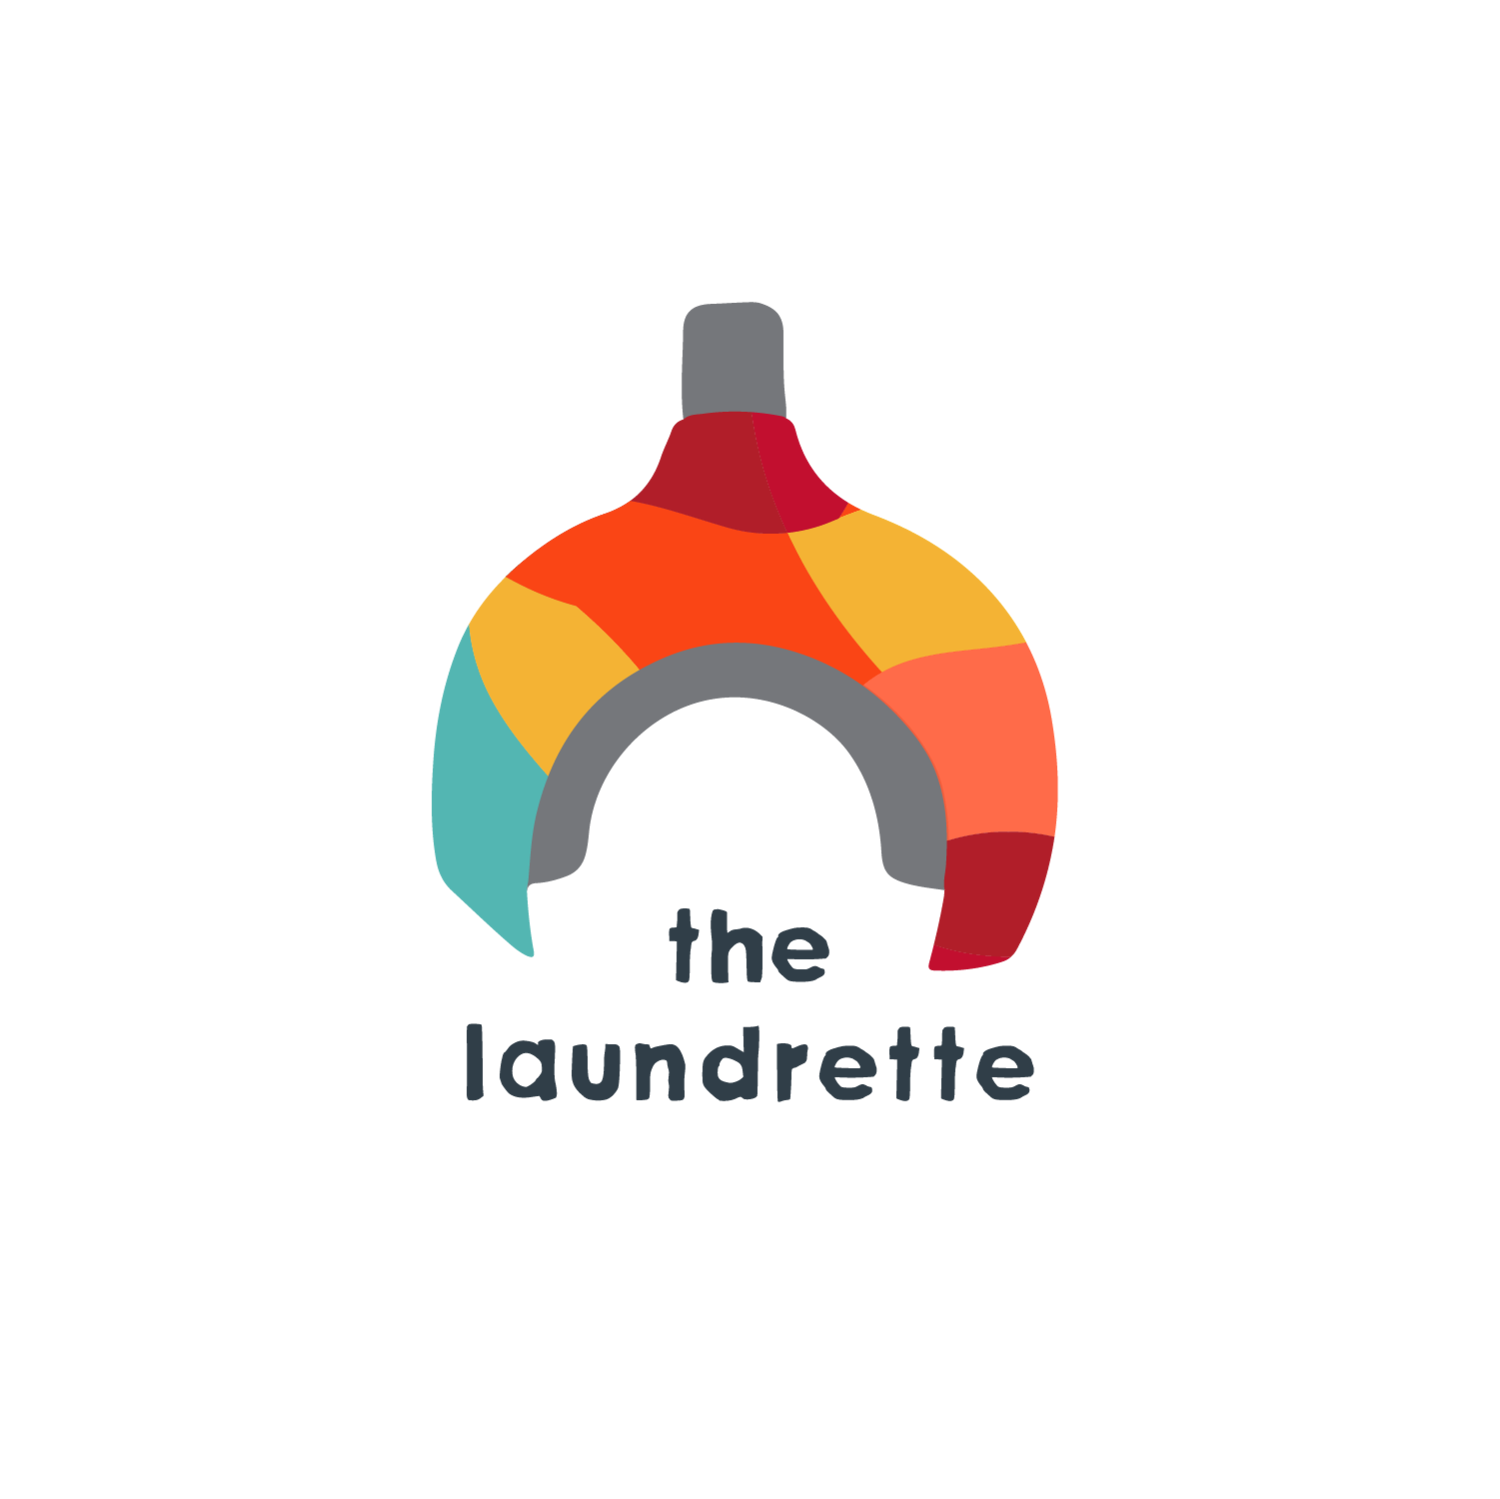 The Laundrette